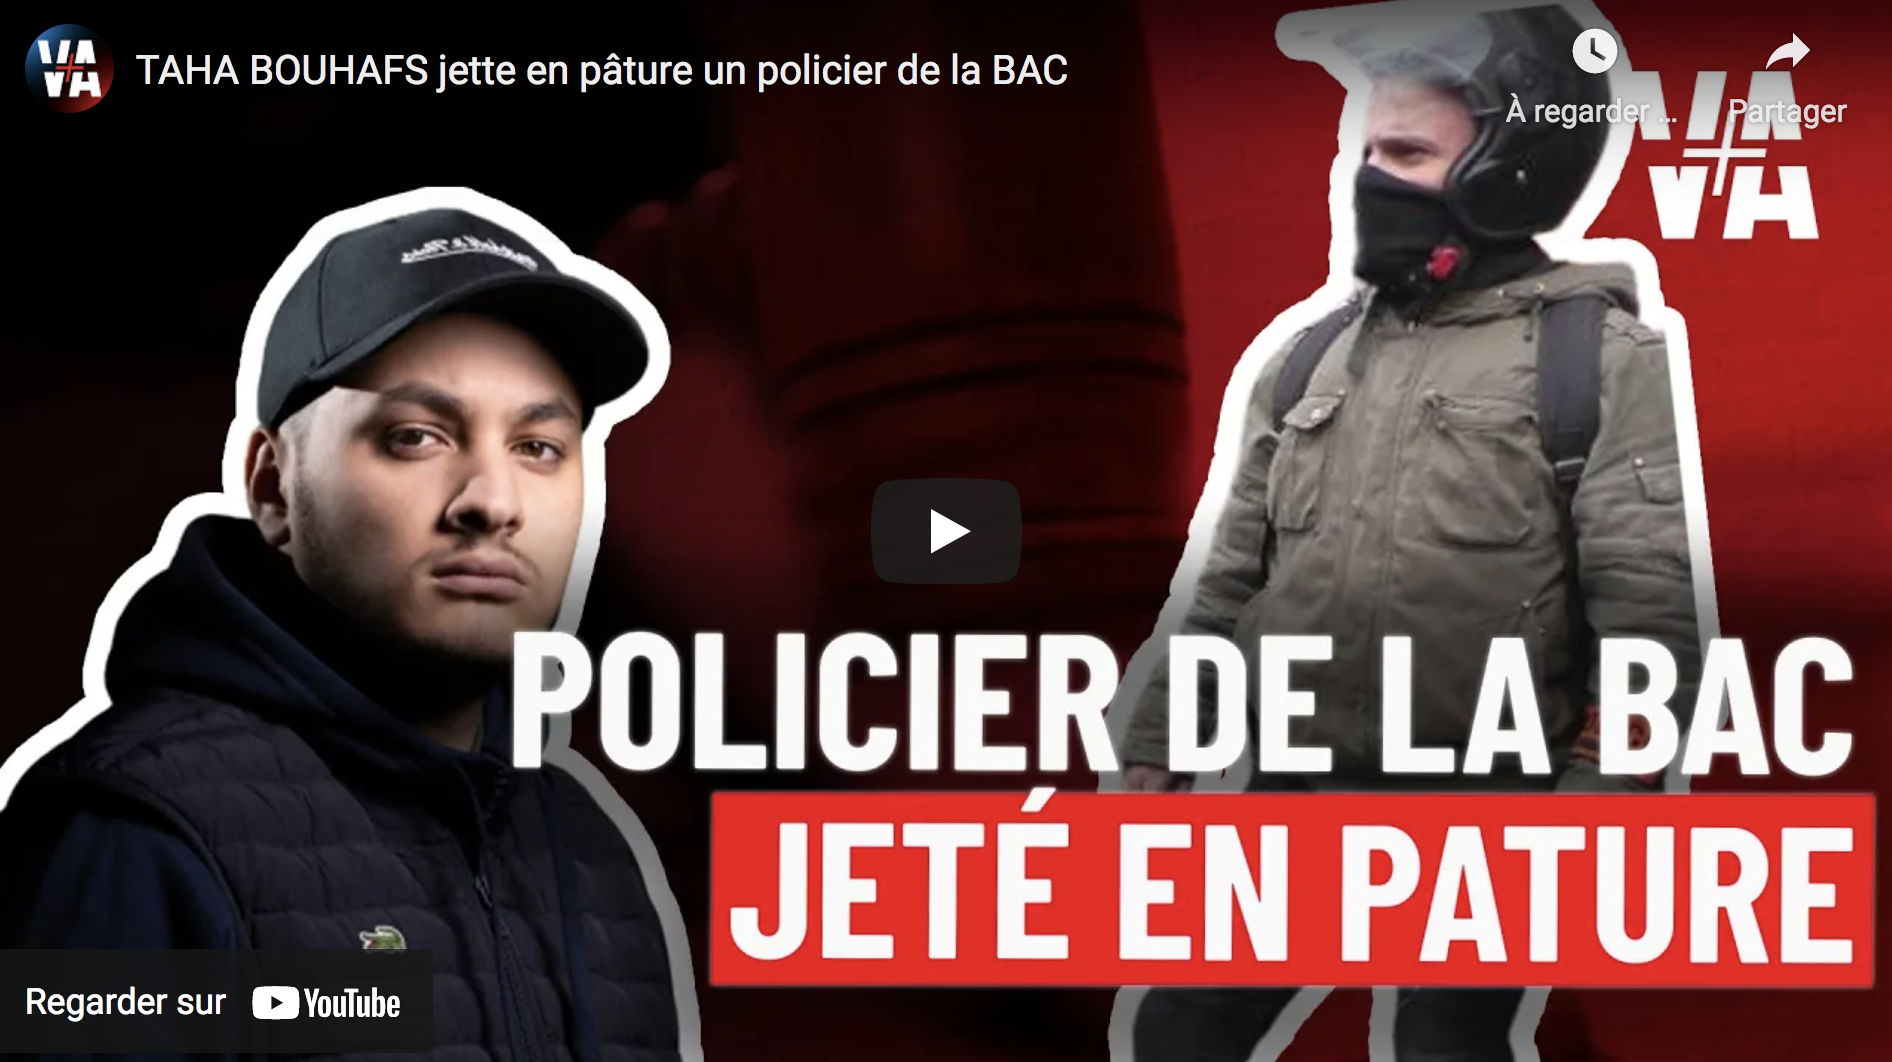 L’extrémiste de gauche Taha Bouhafs jette en pâture un policier de la BAC (VIDÉO)